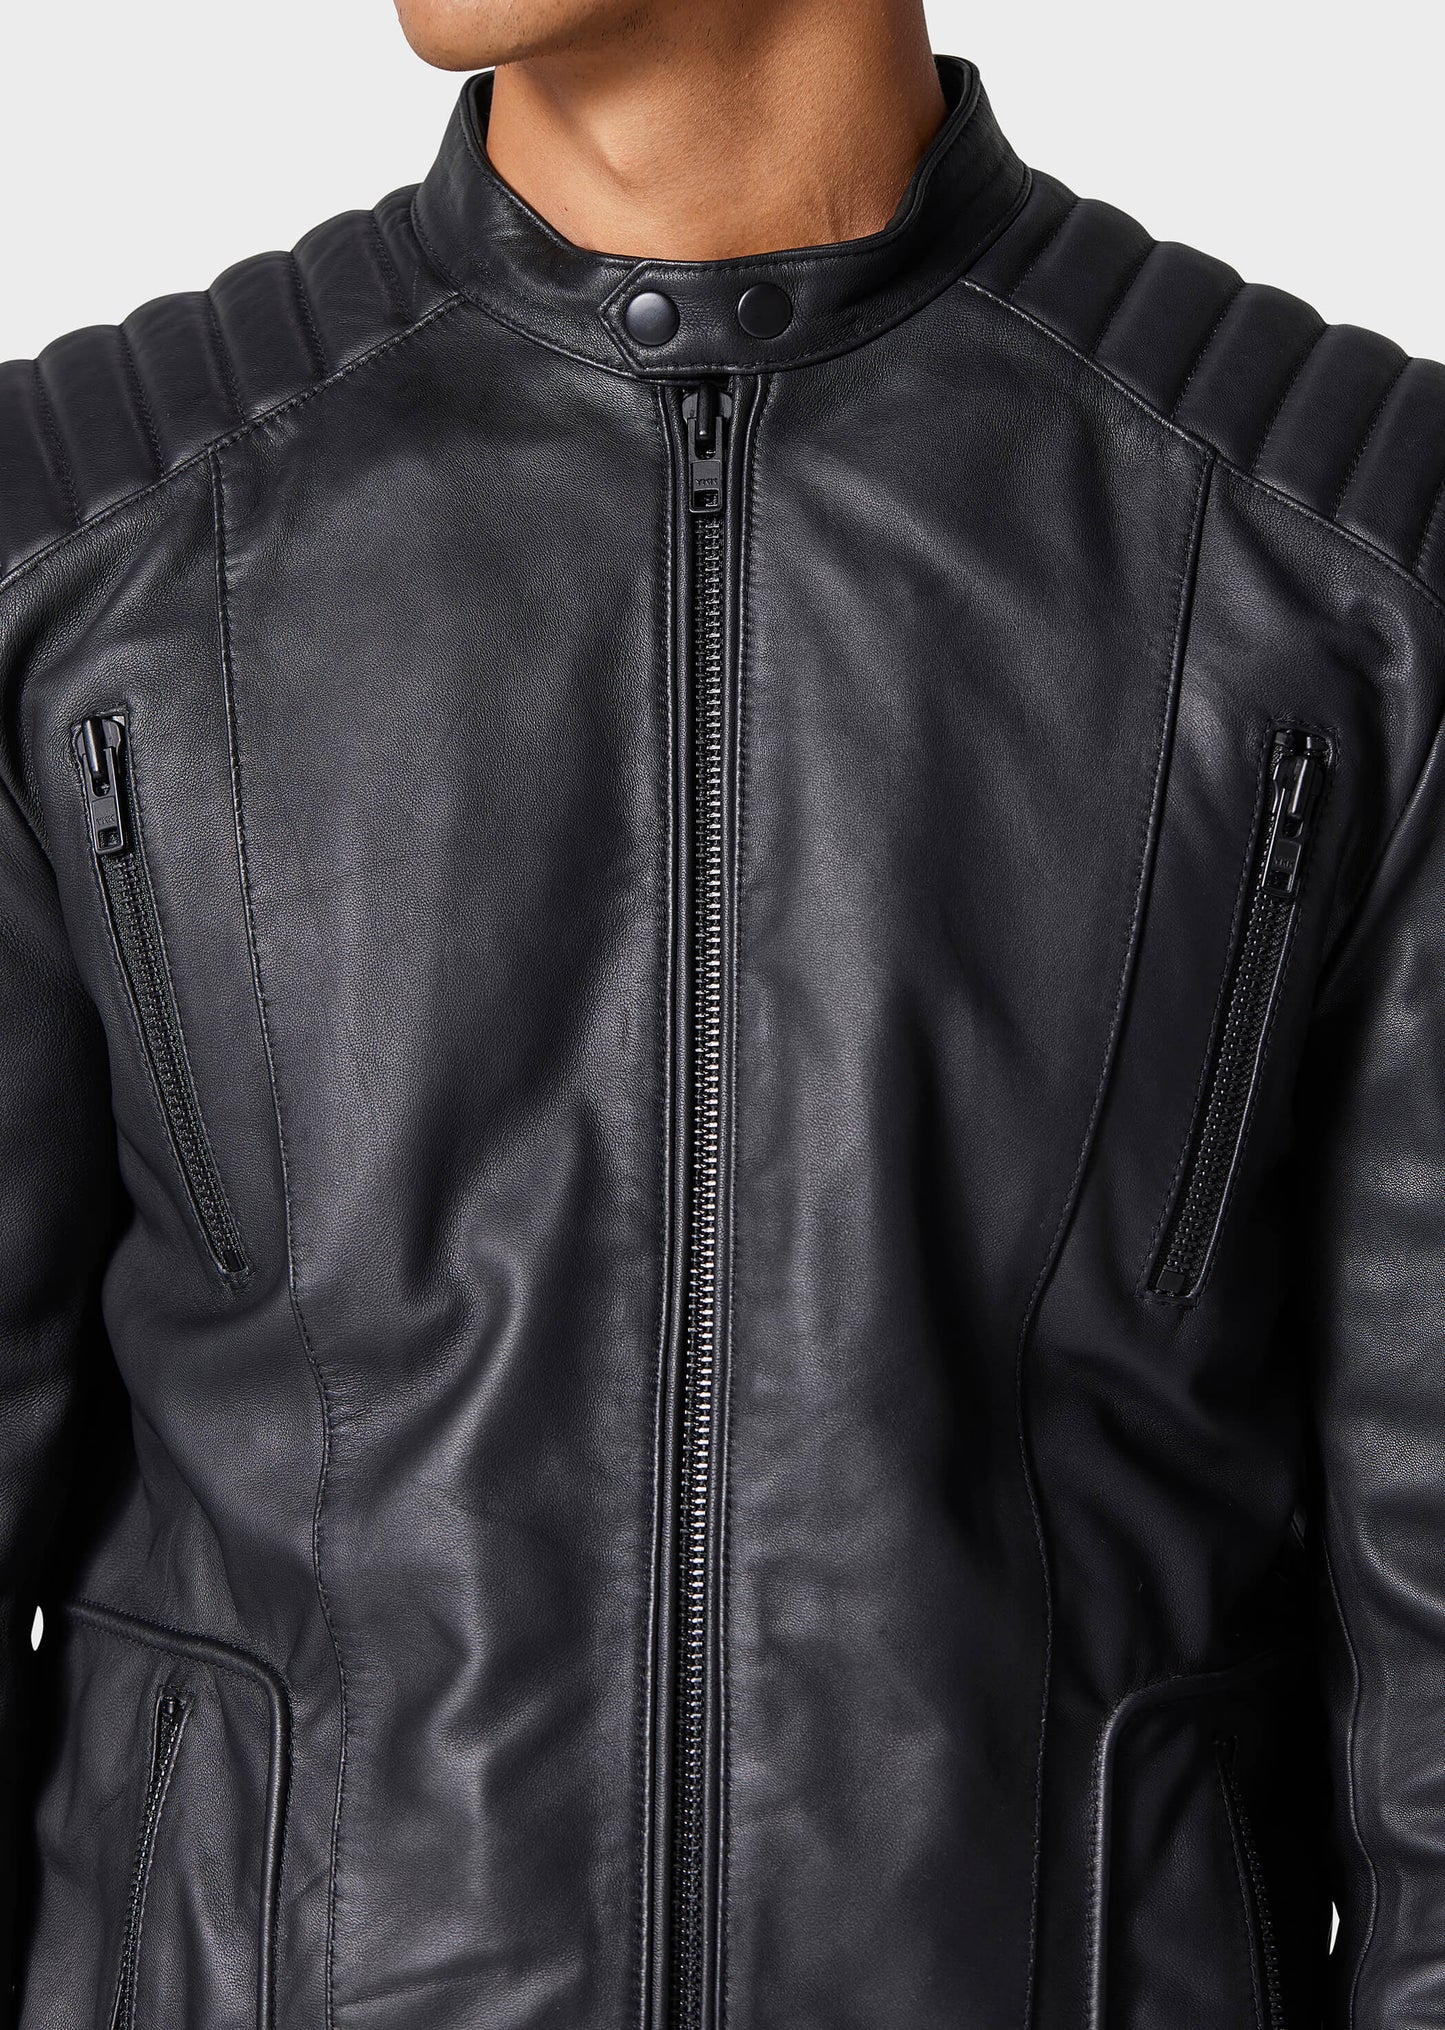 Tracks Black Leather Jacket